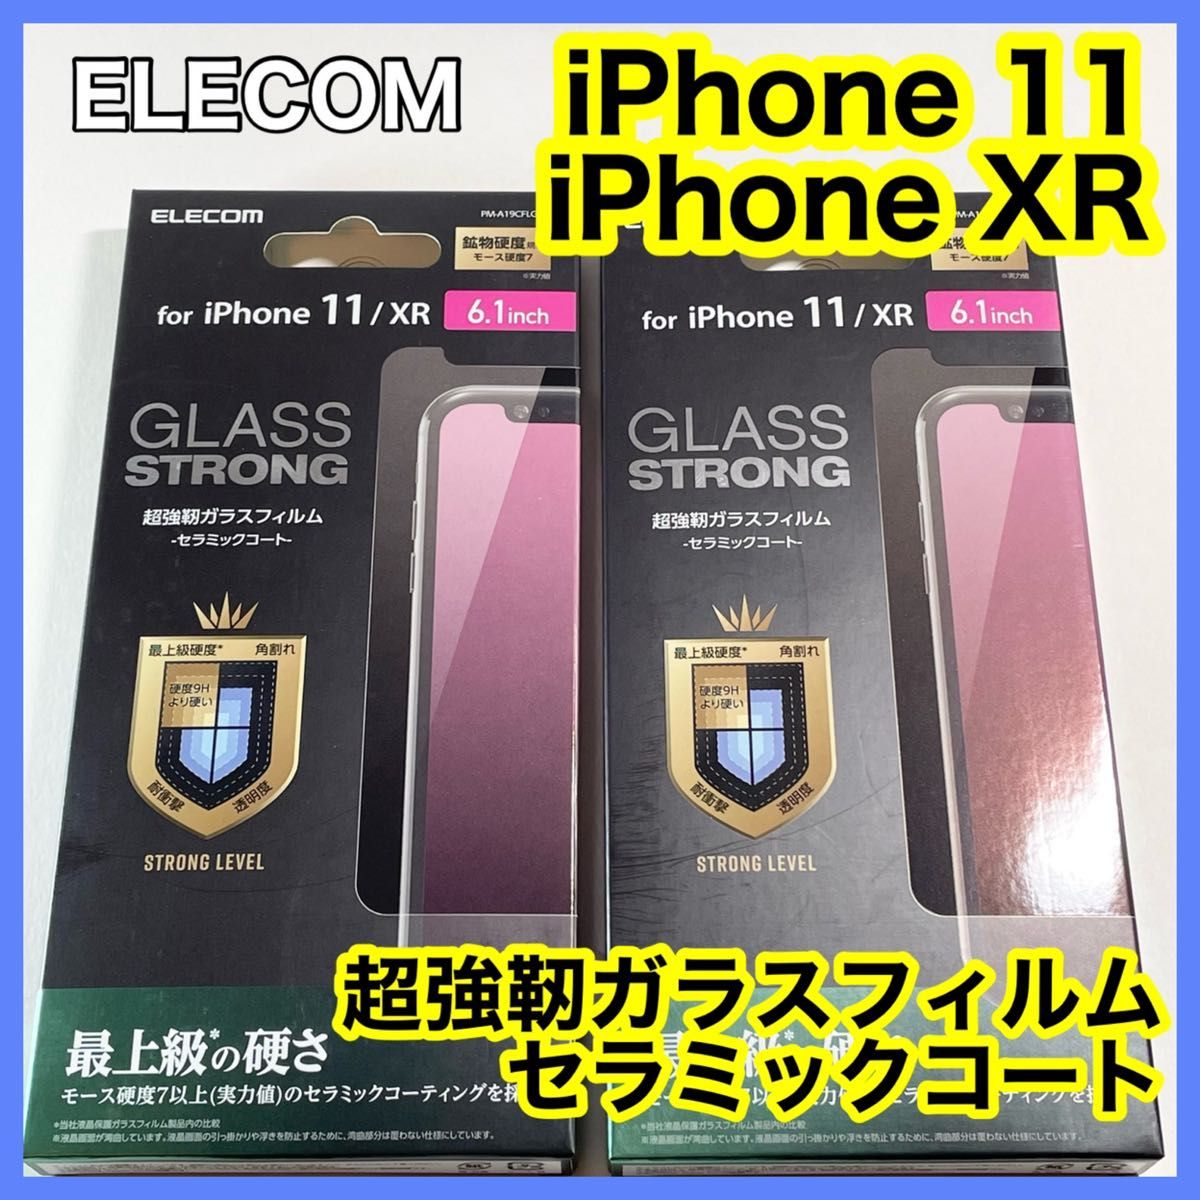 エレコム iPhone11 iPhoneXR用ガラスフィルムセラミックコート2枚セット